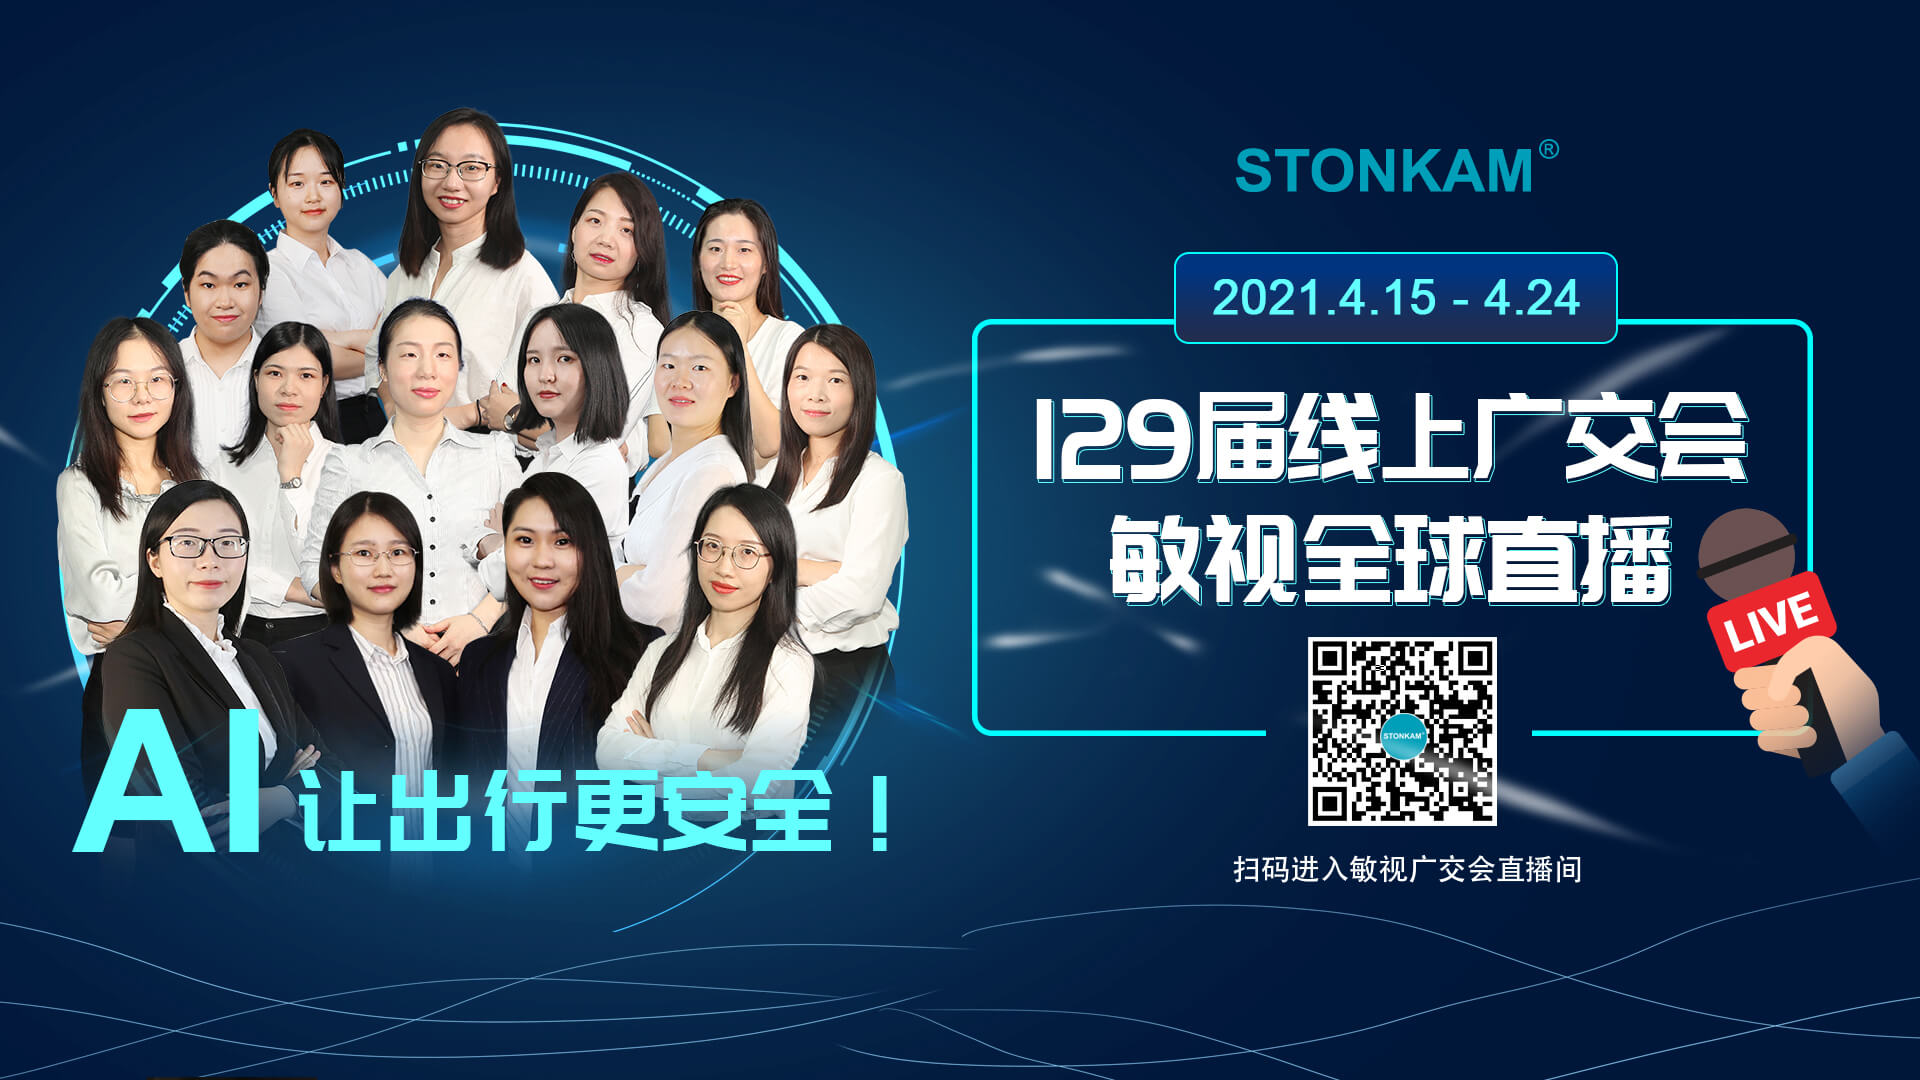 Новые продукты STONKAM AI будут представлены на 129-й Кантонской ярмарке!